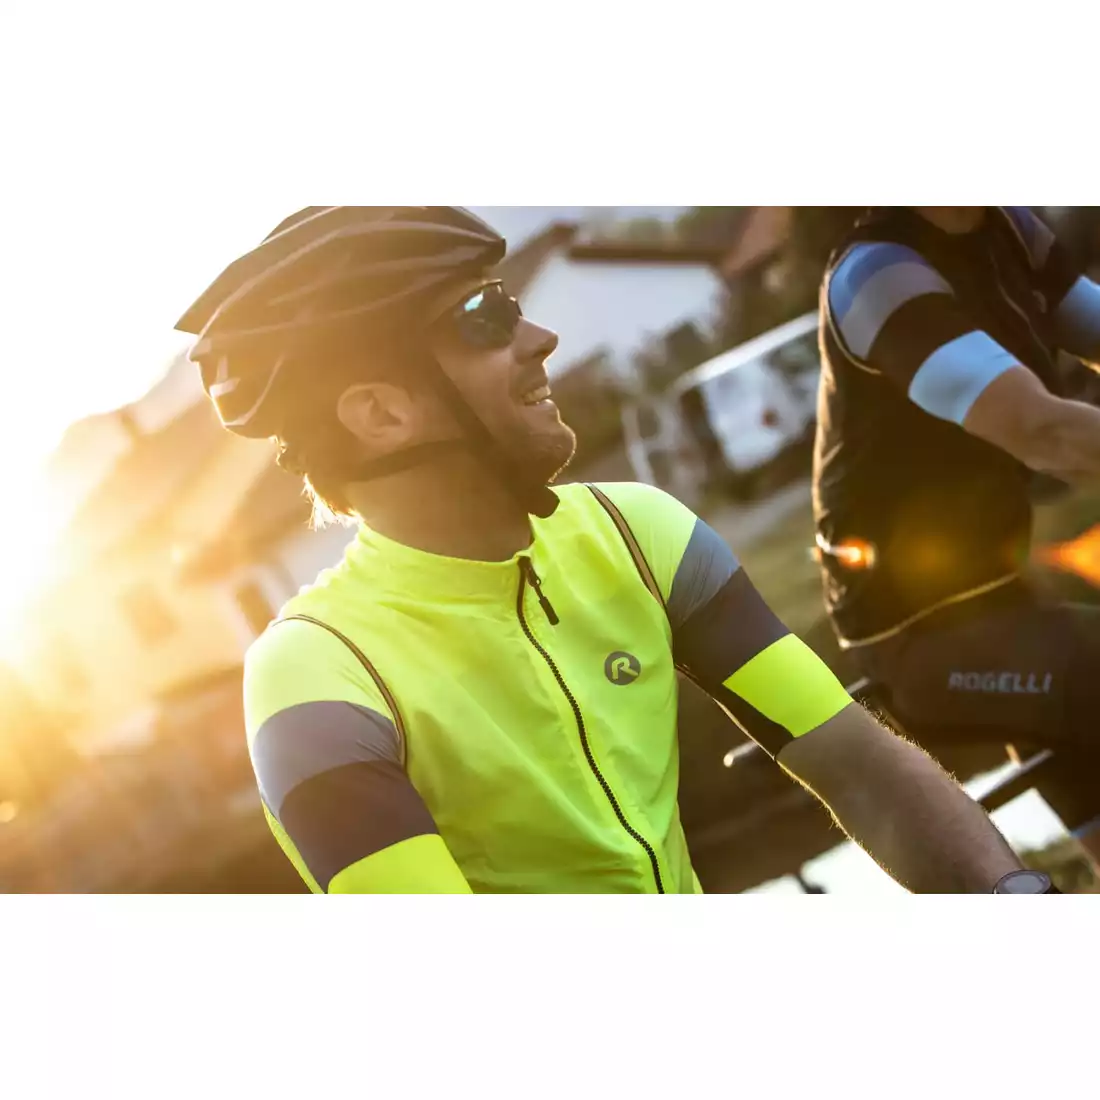 Rogelli CORE pánská cyklistická vesta, fluor-žlutý